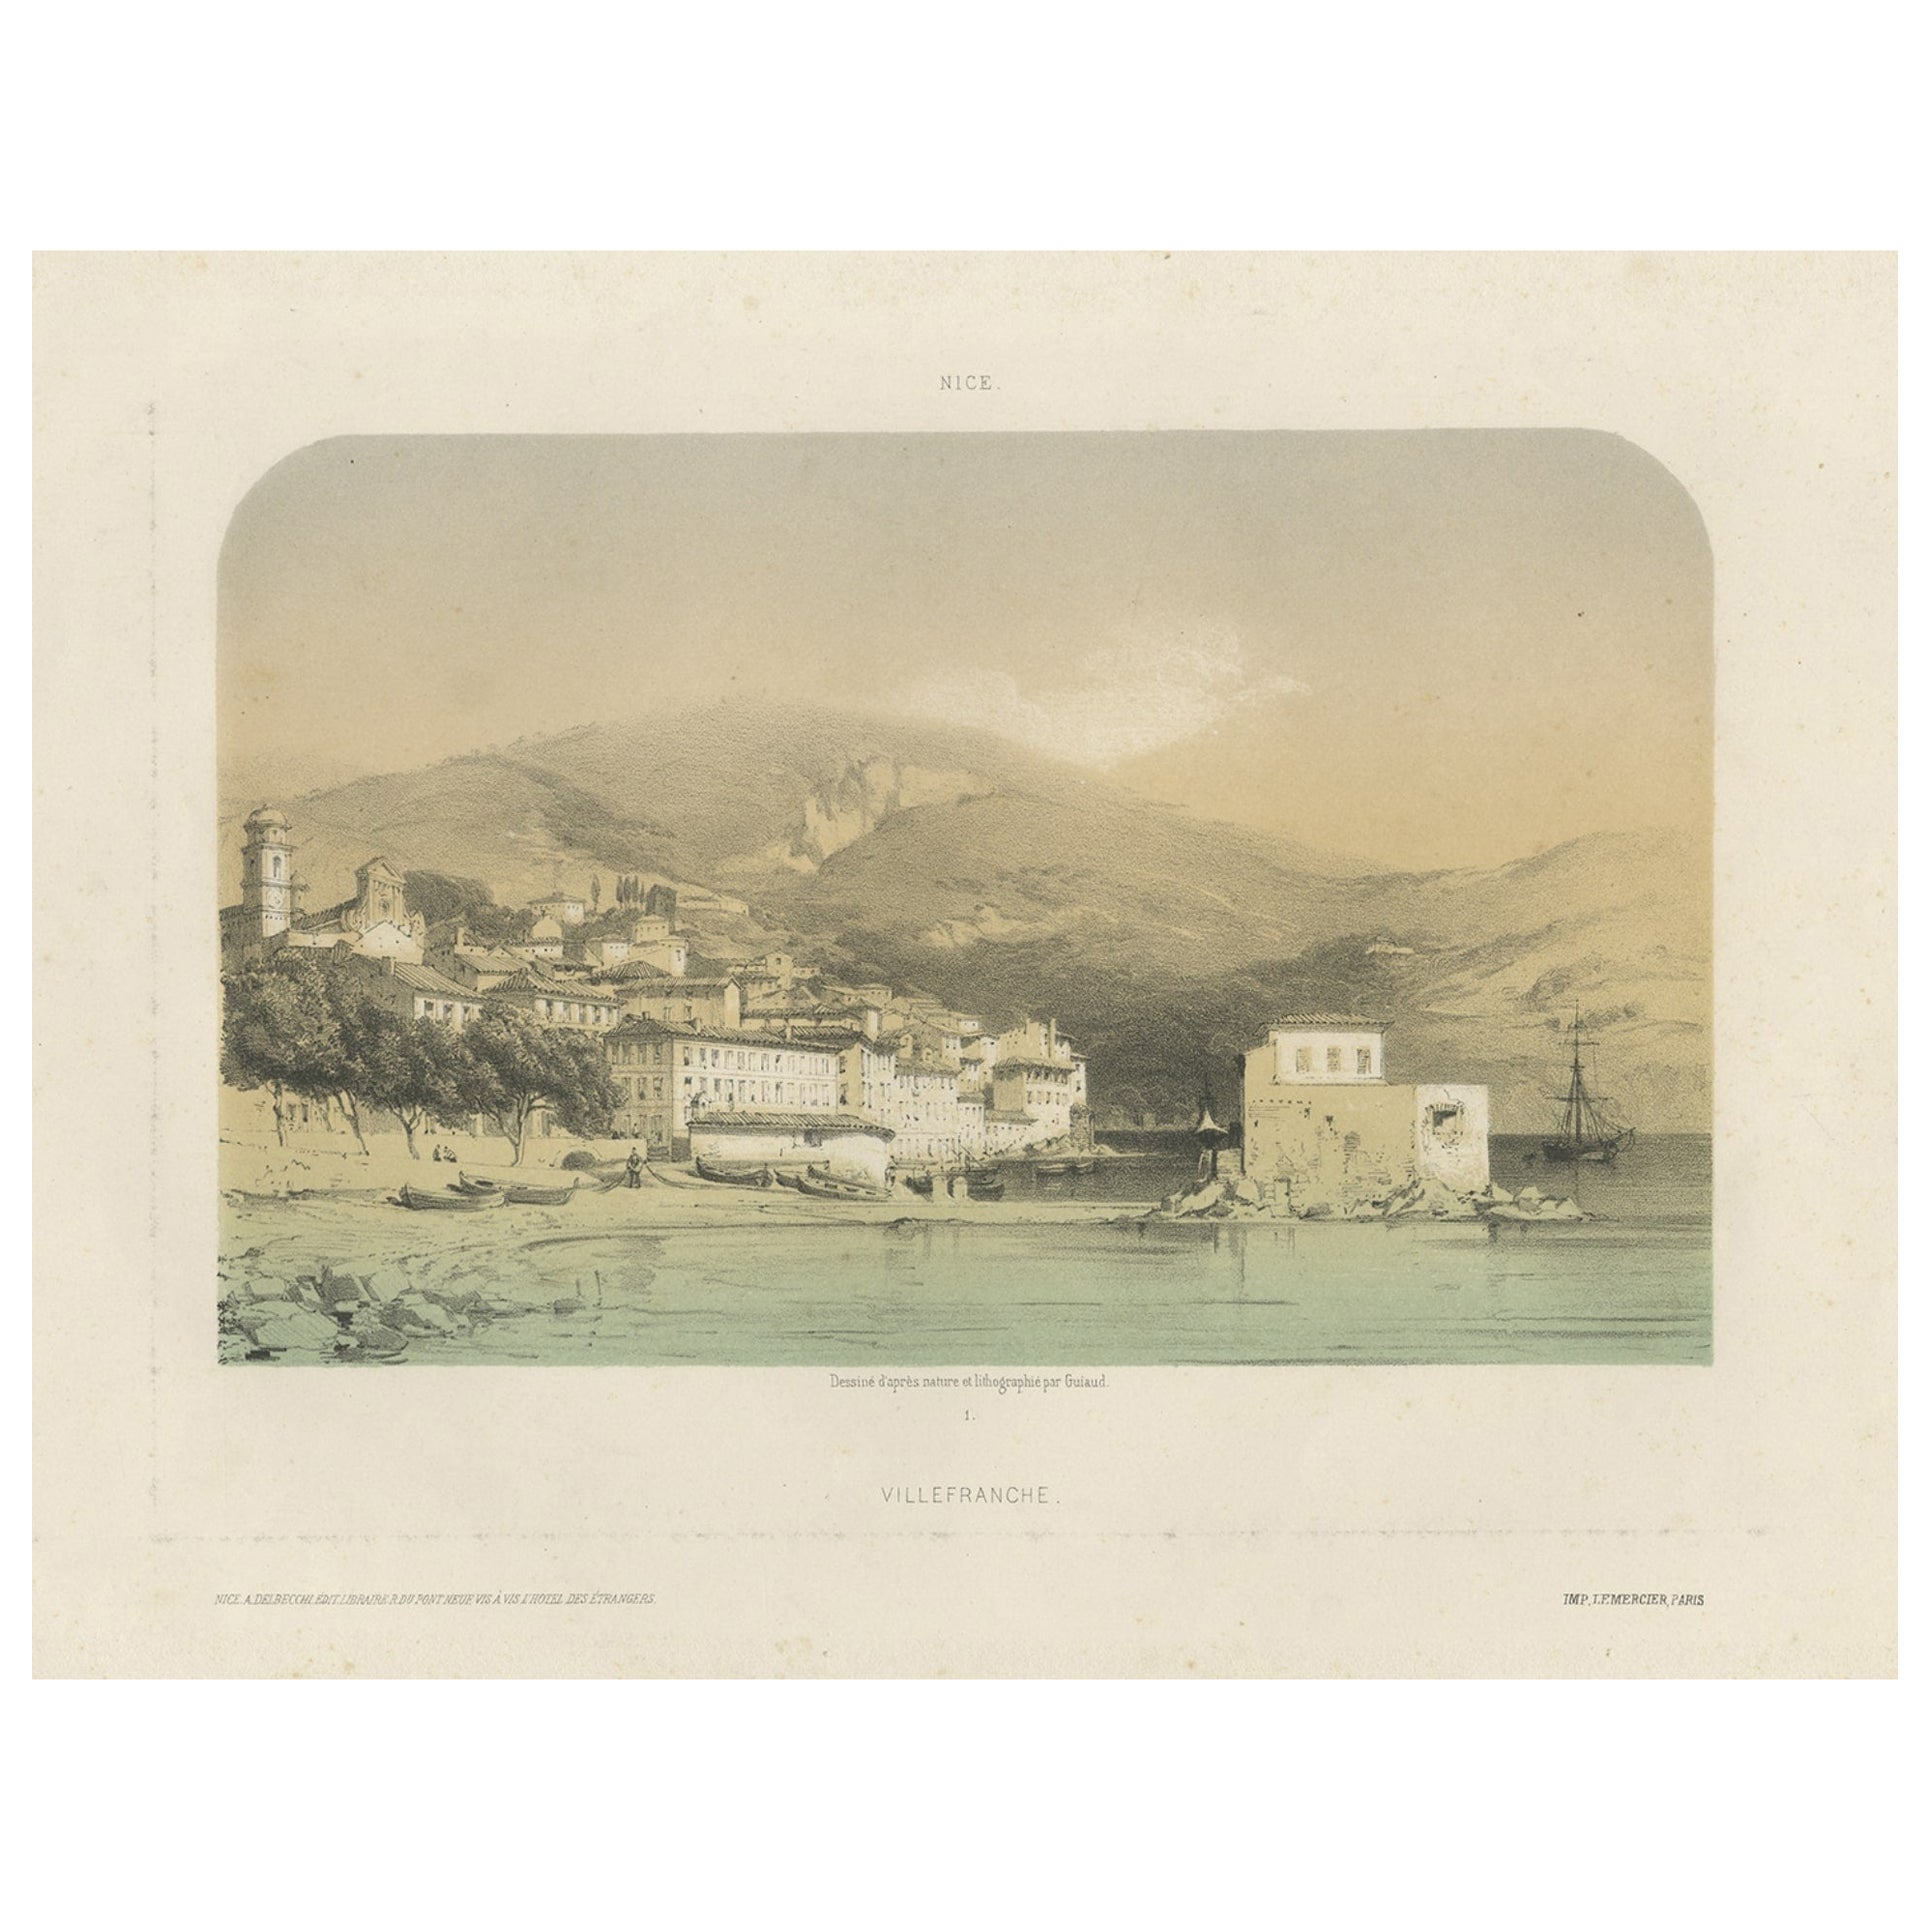 Seltene originale antike Ansicht in alten Farben von Villefranche in Frankreich, um 1860